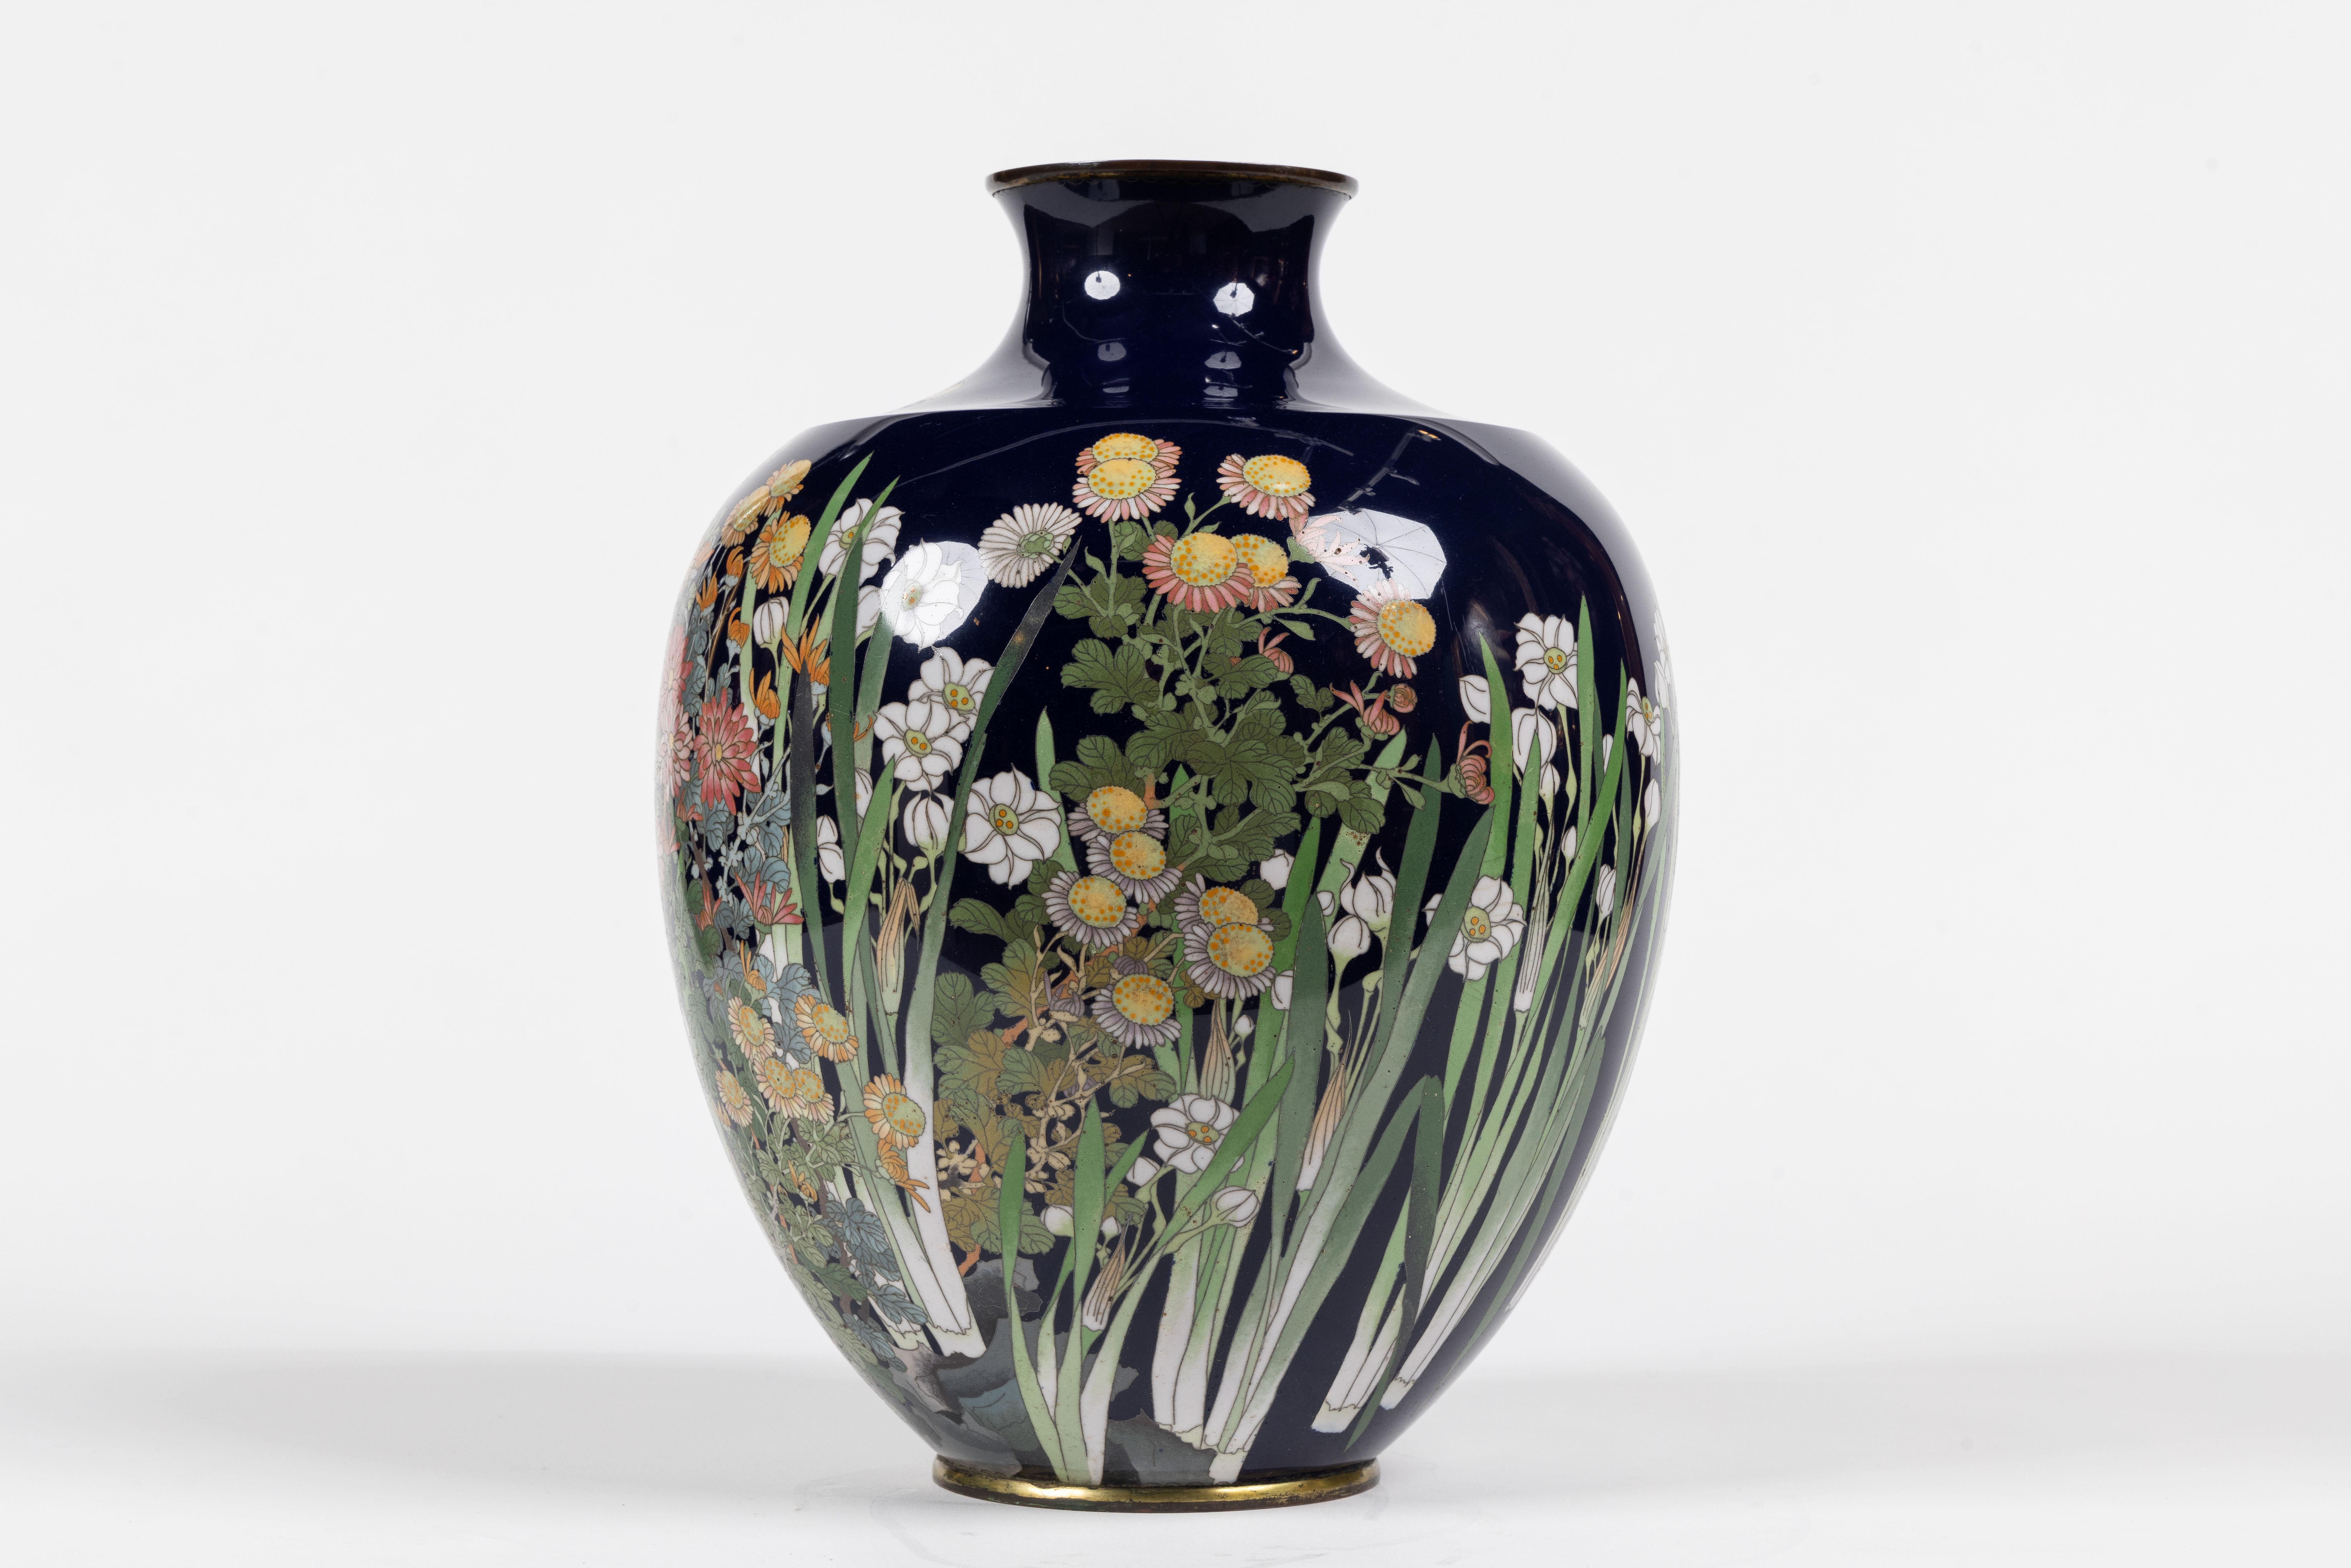 Ce grand vase à bourgeons en émail cloisonné japonais de l'époque Meiji, de qualité exquise et à fond cobalt, est une pièce vraiment remarquable. Cette magnifique œuvre d'art incarne la beauté intemporelle et le savoir-faire impeccable de l'ère